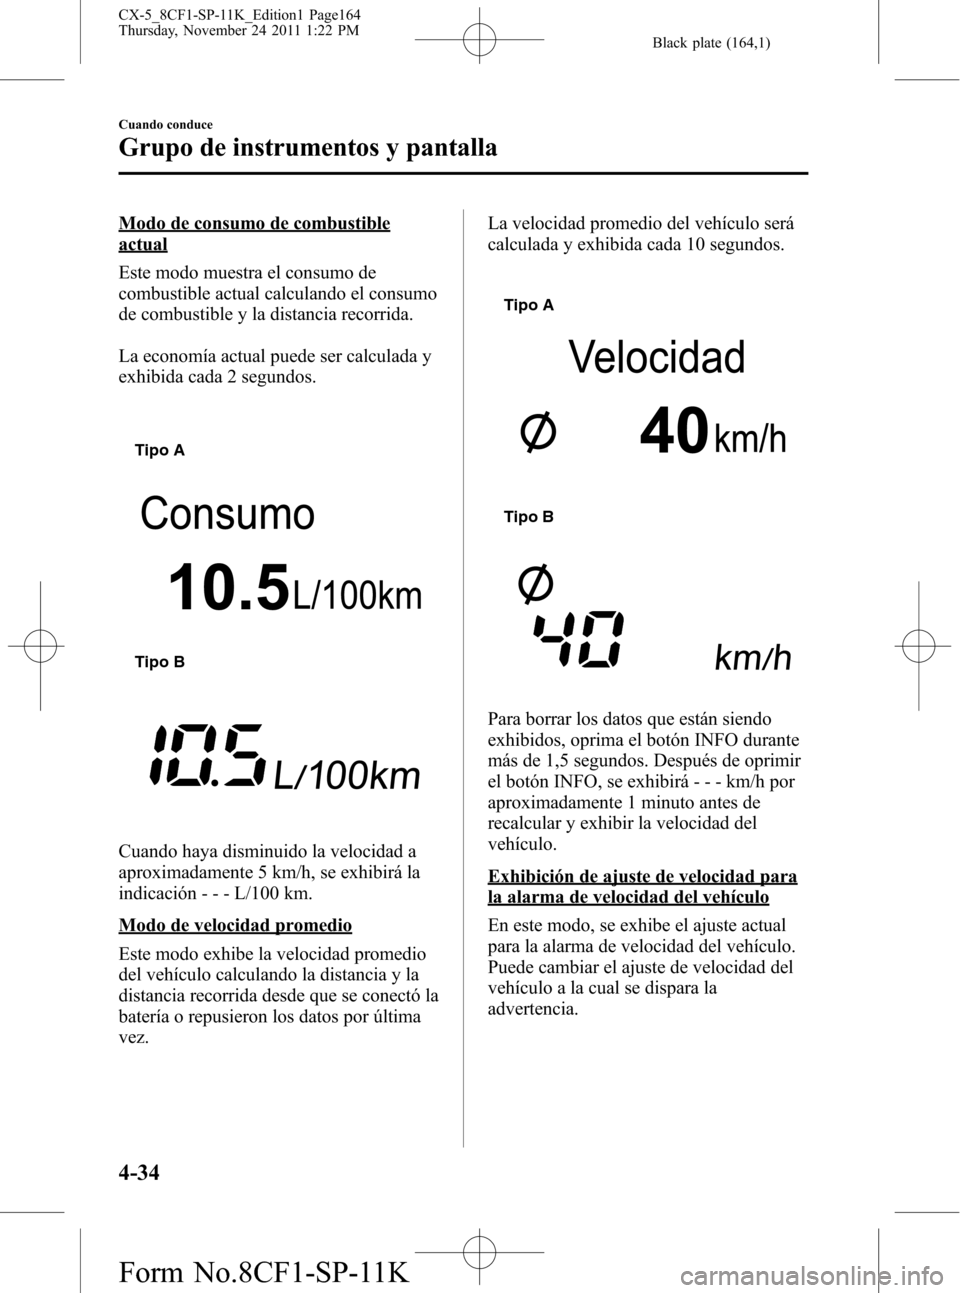 MAZDA MODEL CX-5 2012  Manual del propietario (in Spanish)  Black plate (164,1)
Modo de consumo de combustible
actual
Este modo muestra el consumo de
combustible actual calculando el consumo
de combustible y la distancia recorrida.
La economía actual puede se